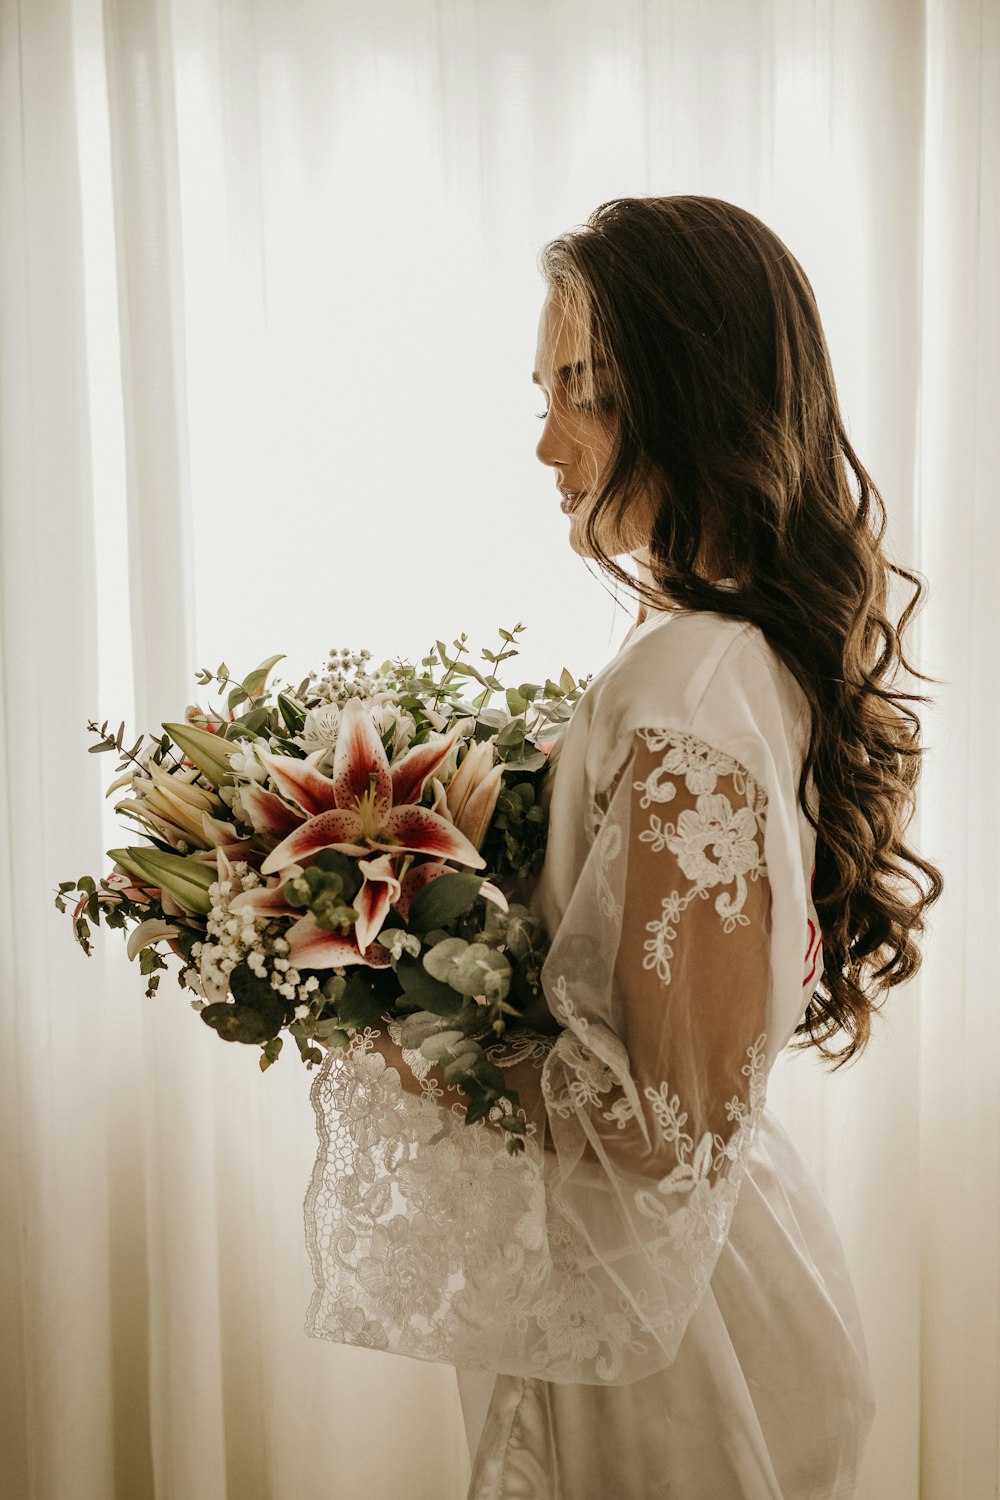 Frau im weißen Kleid mit Blumenstrauß